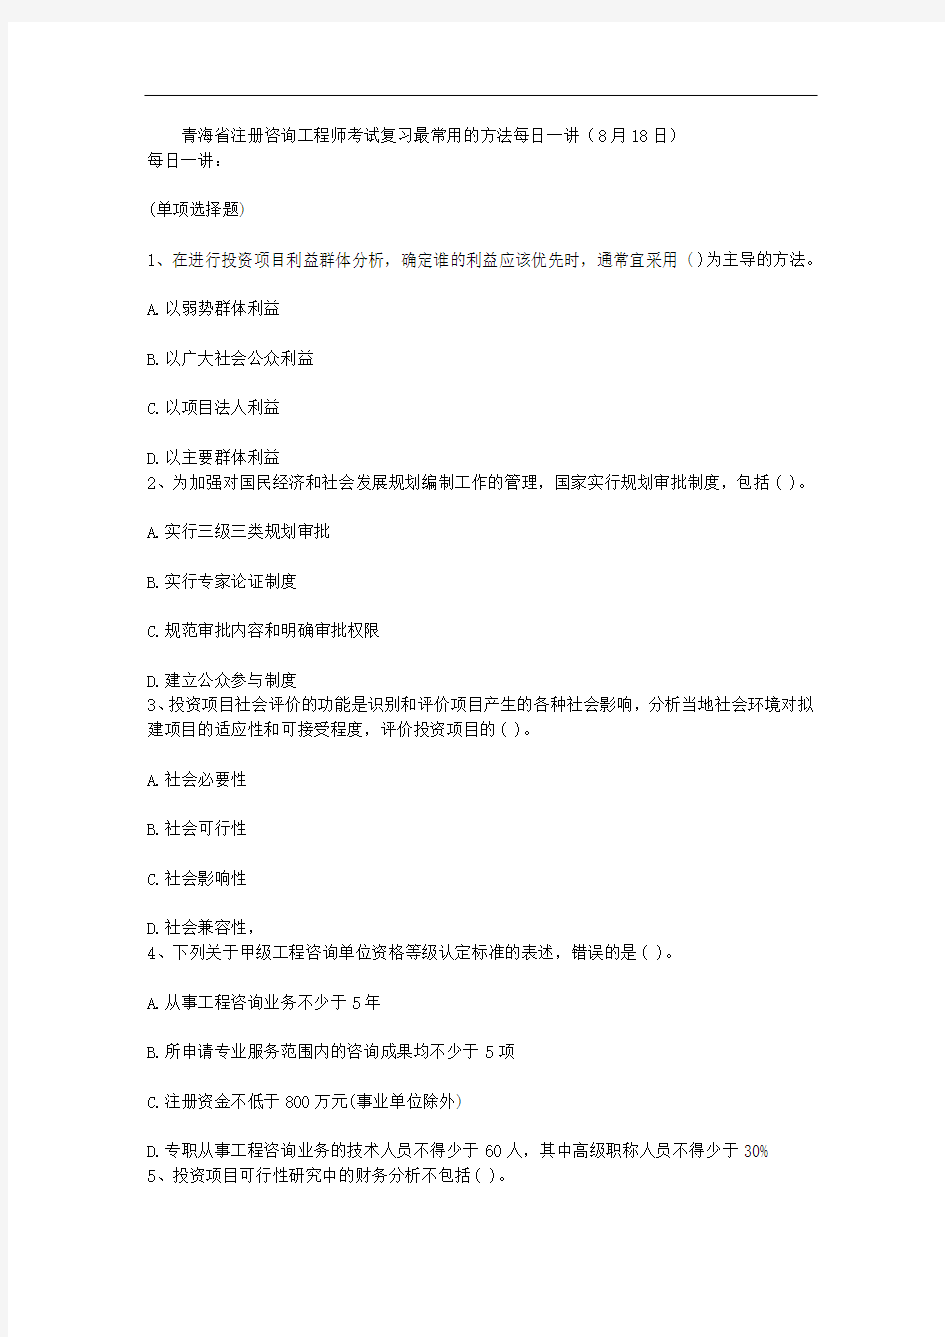 青海省注册咨询工程师考试复习最常用的方法每日一讲(8月18日)